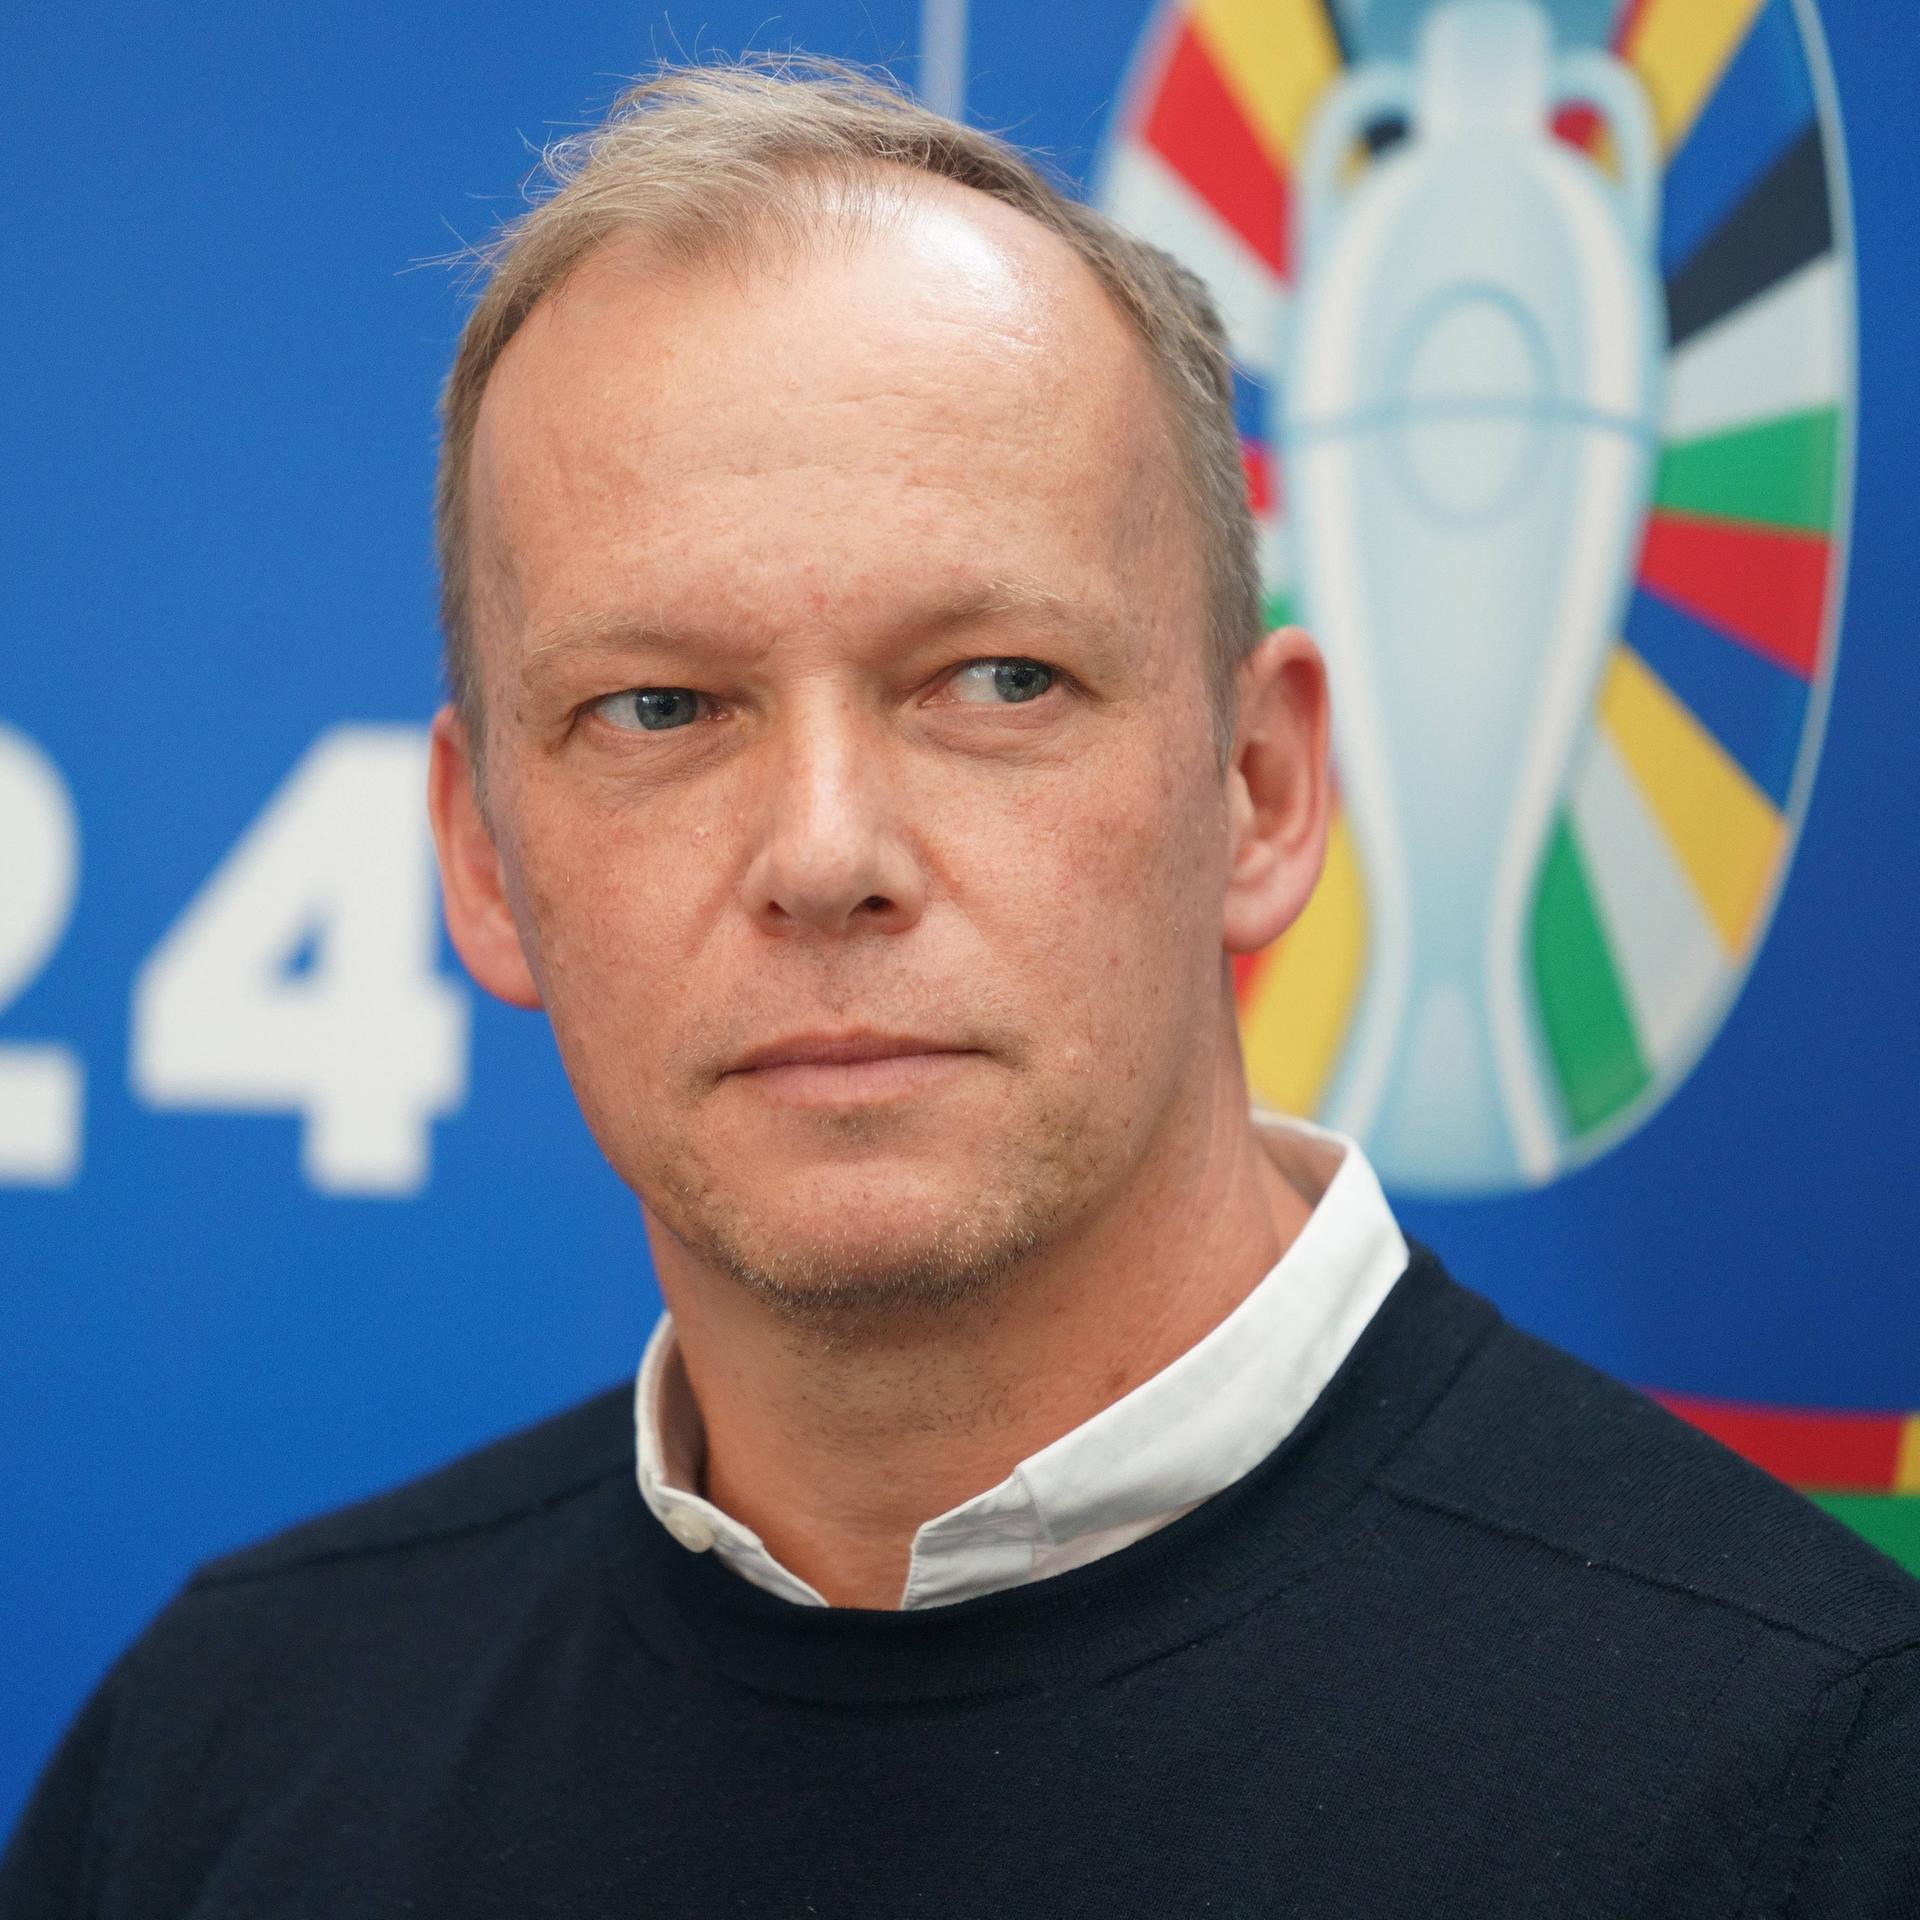 Zu sehen ist Markus Stenger, Geschäftsführer der EURO GmbH, vor dem Logo der EURO 2024 in Deutschland. 